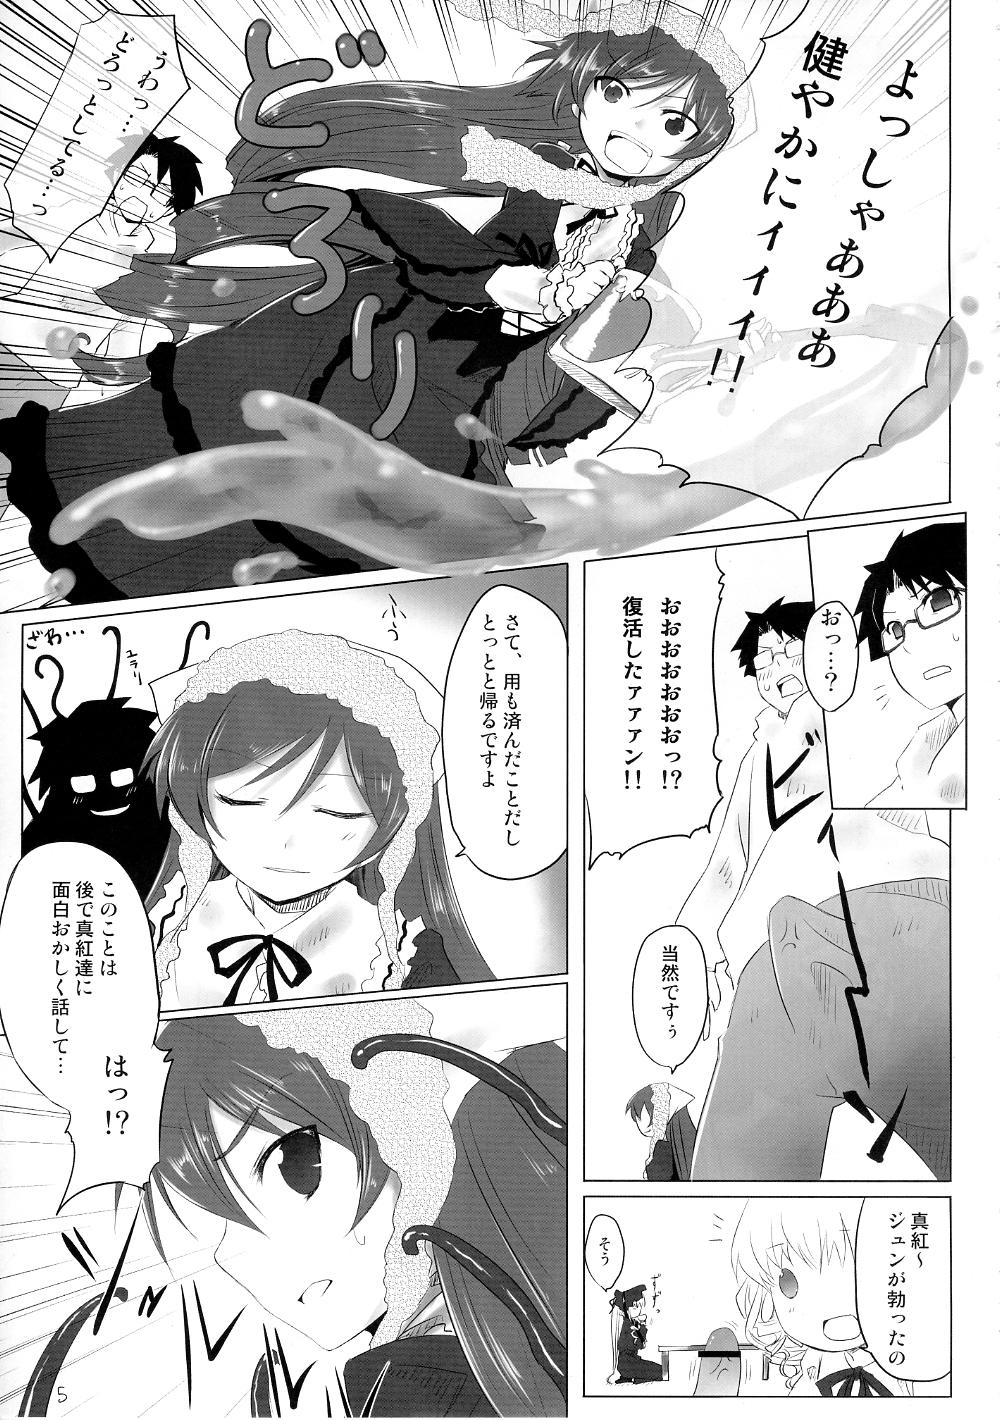 She Sukoyaka ni!! - Rozen maiden Fudendo - Page 4